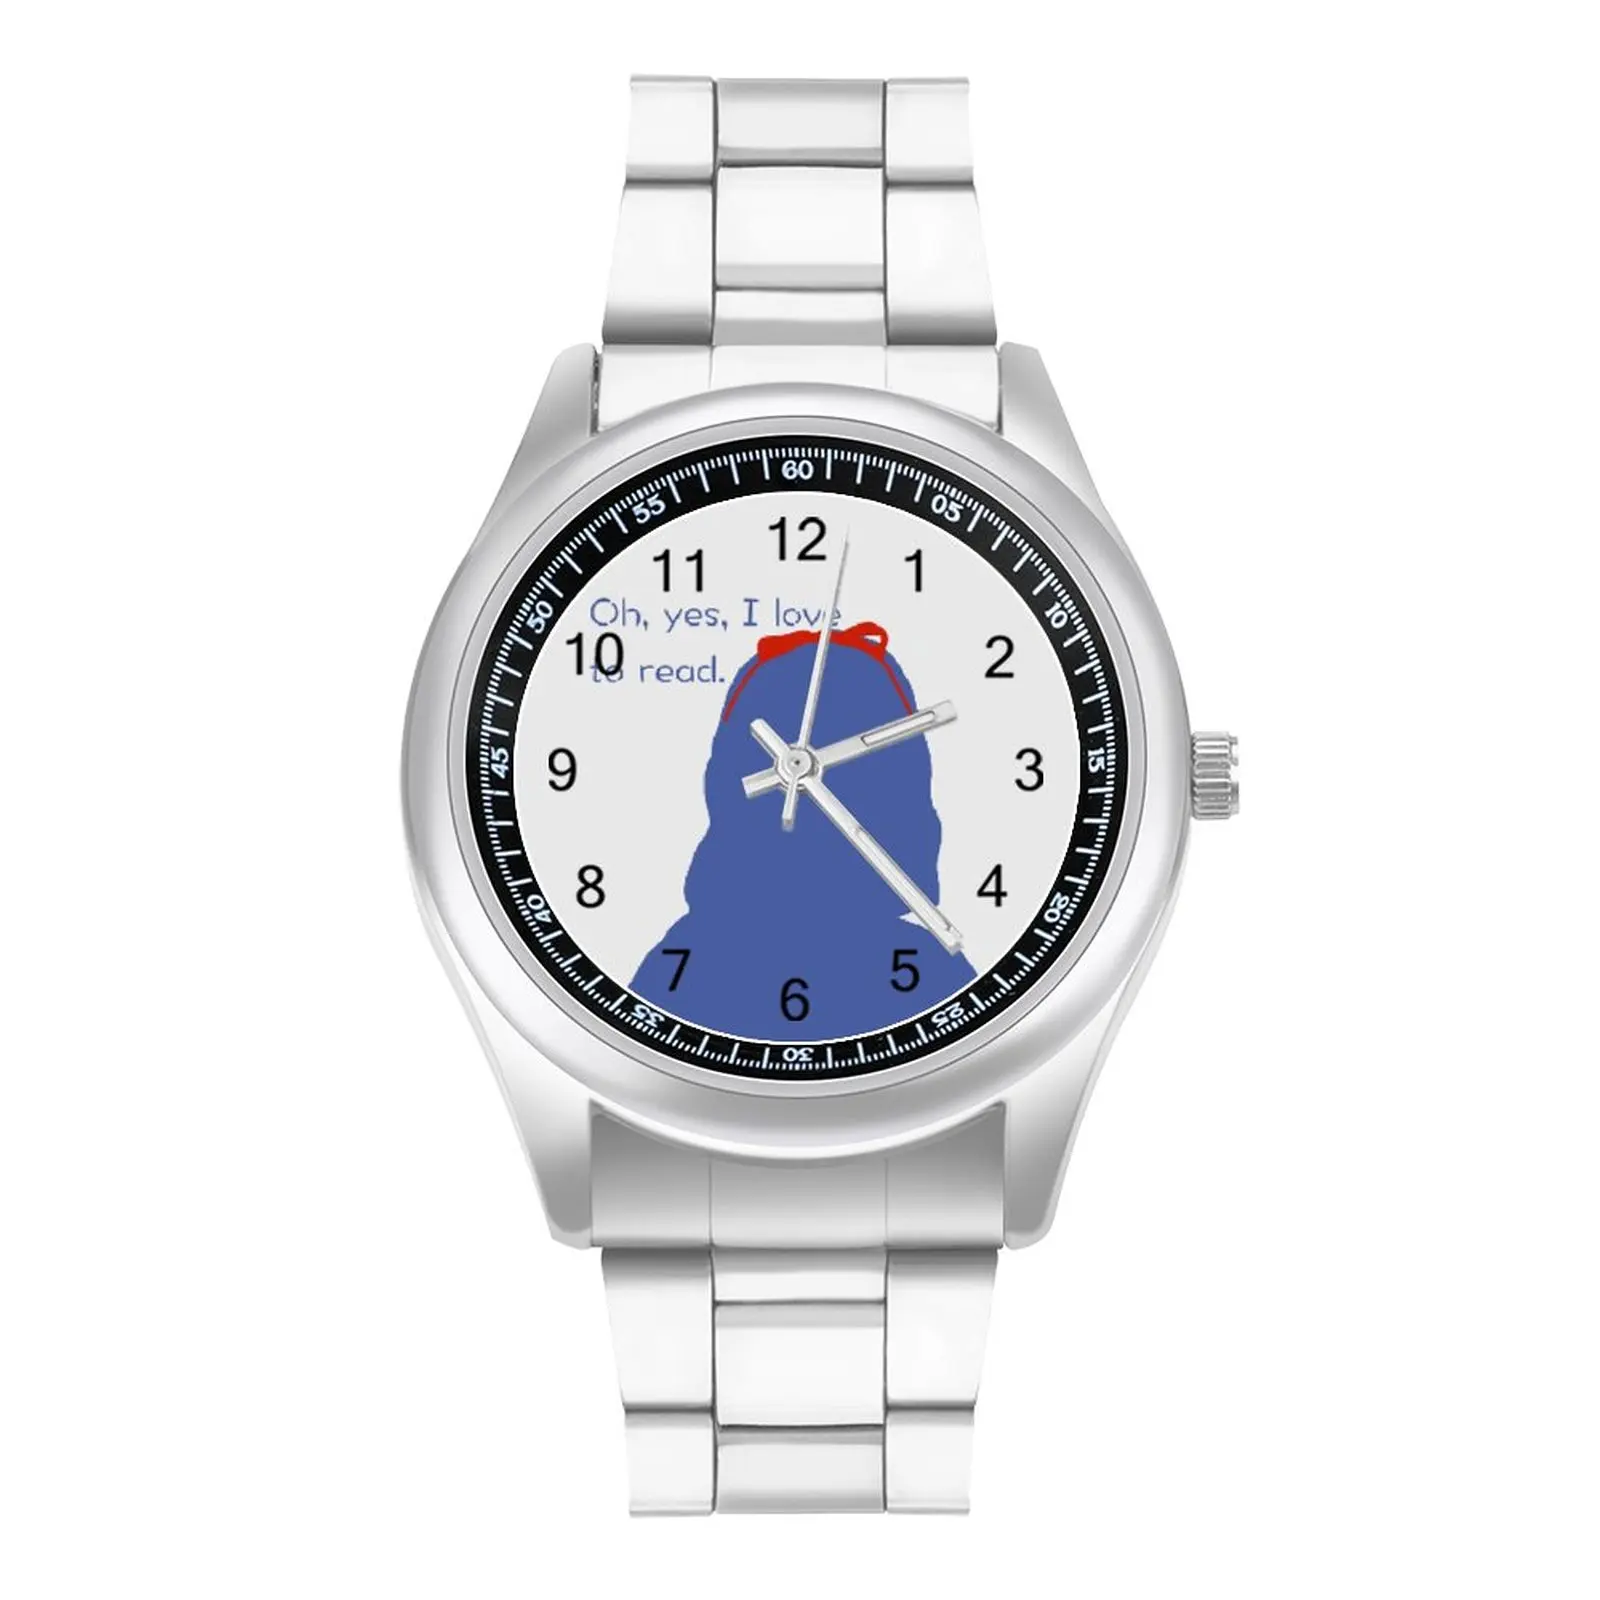 

Кварцевые часы Matilda, аккуратные наручные часы для мальчиков, фото, стальные спортивные часы, купить наручные часы